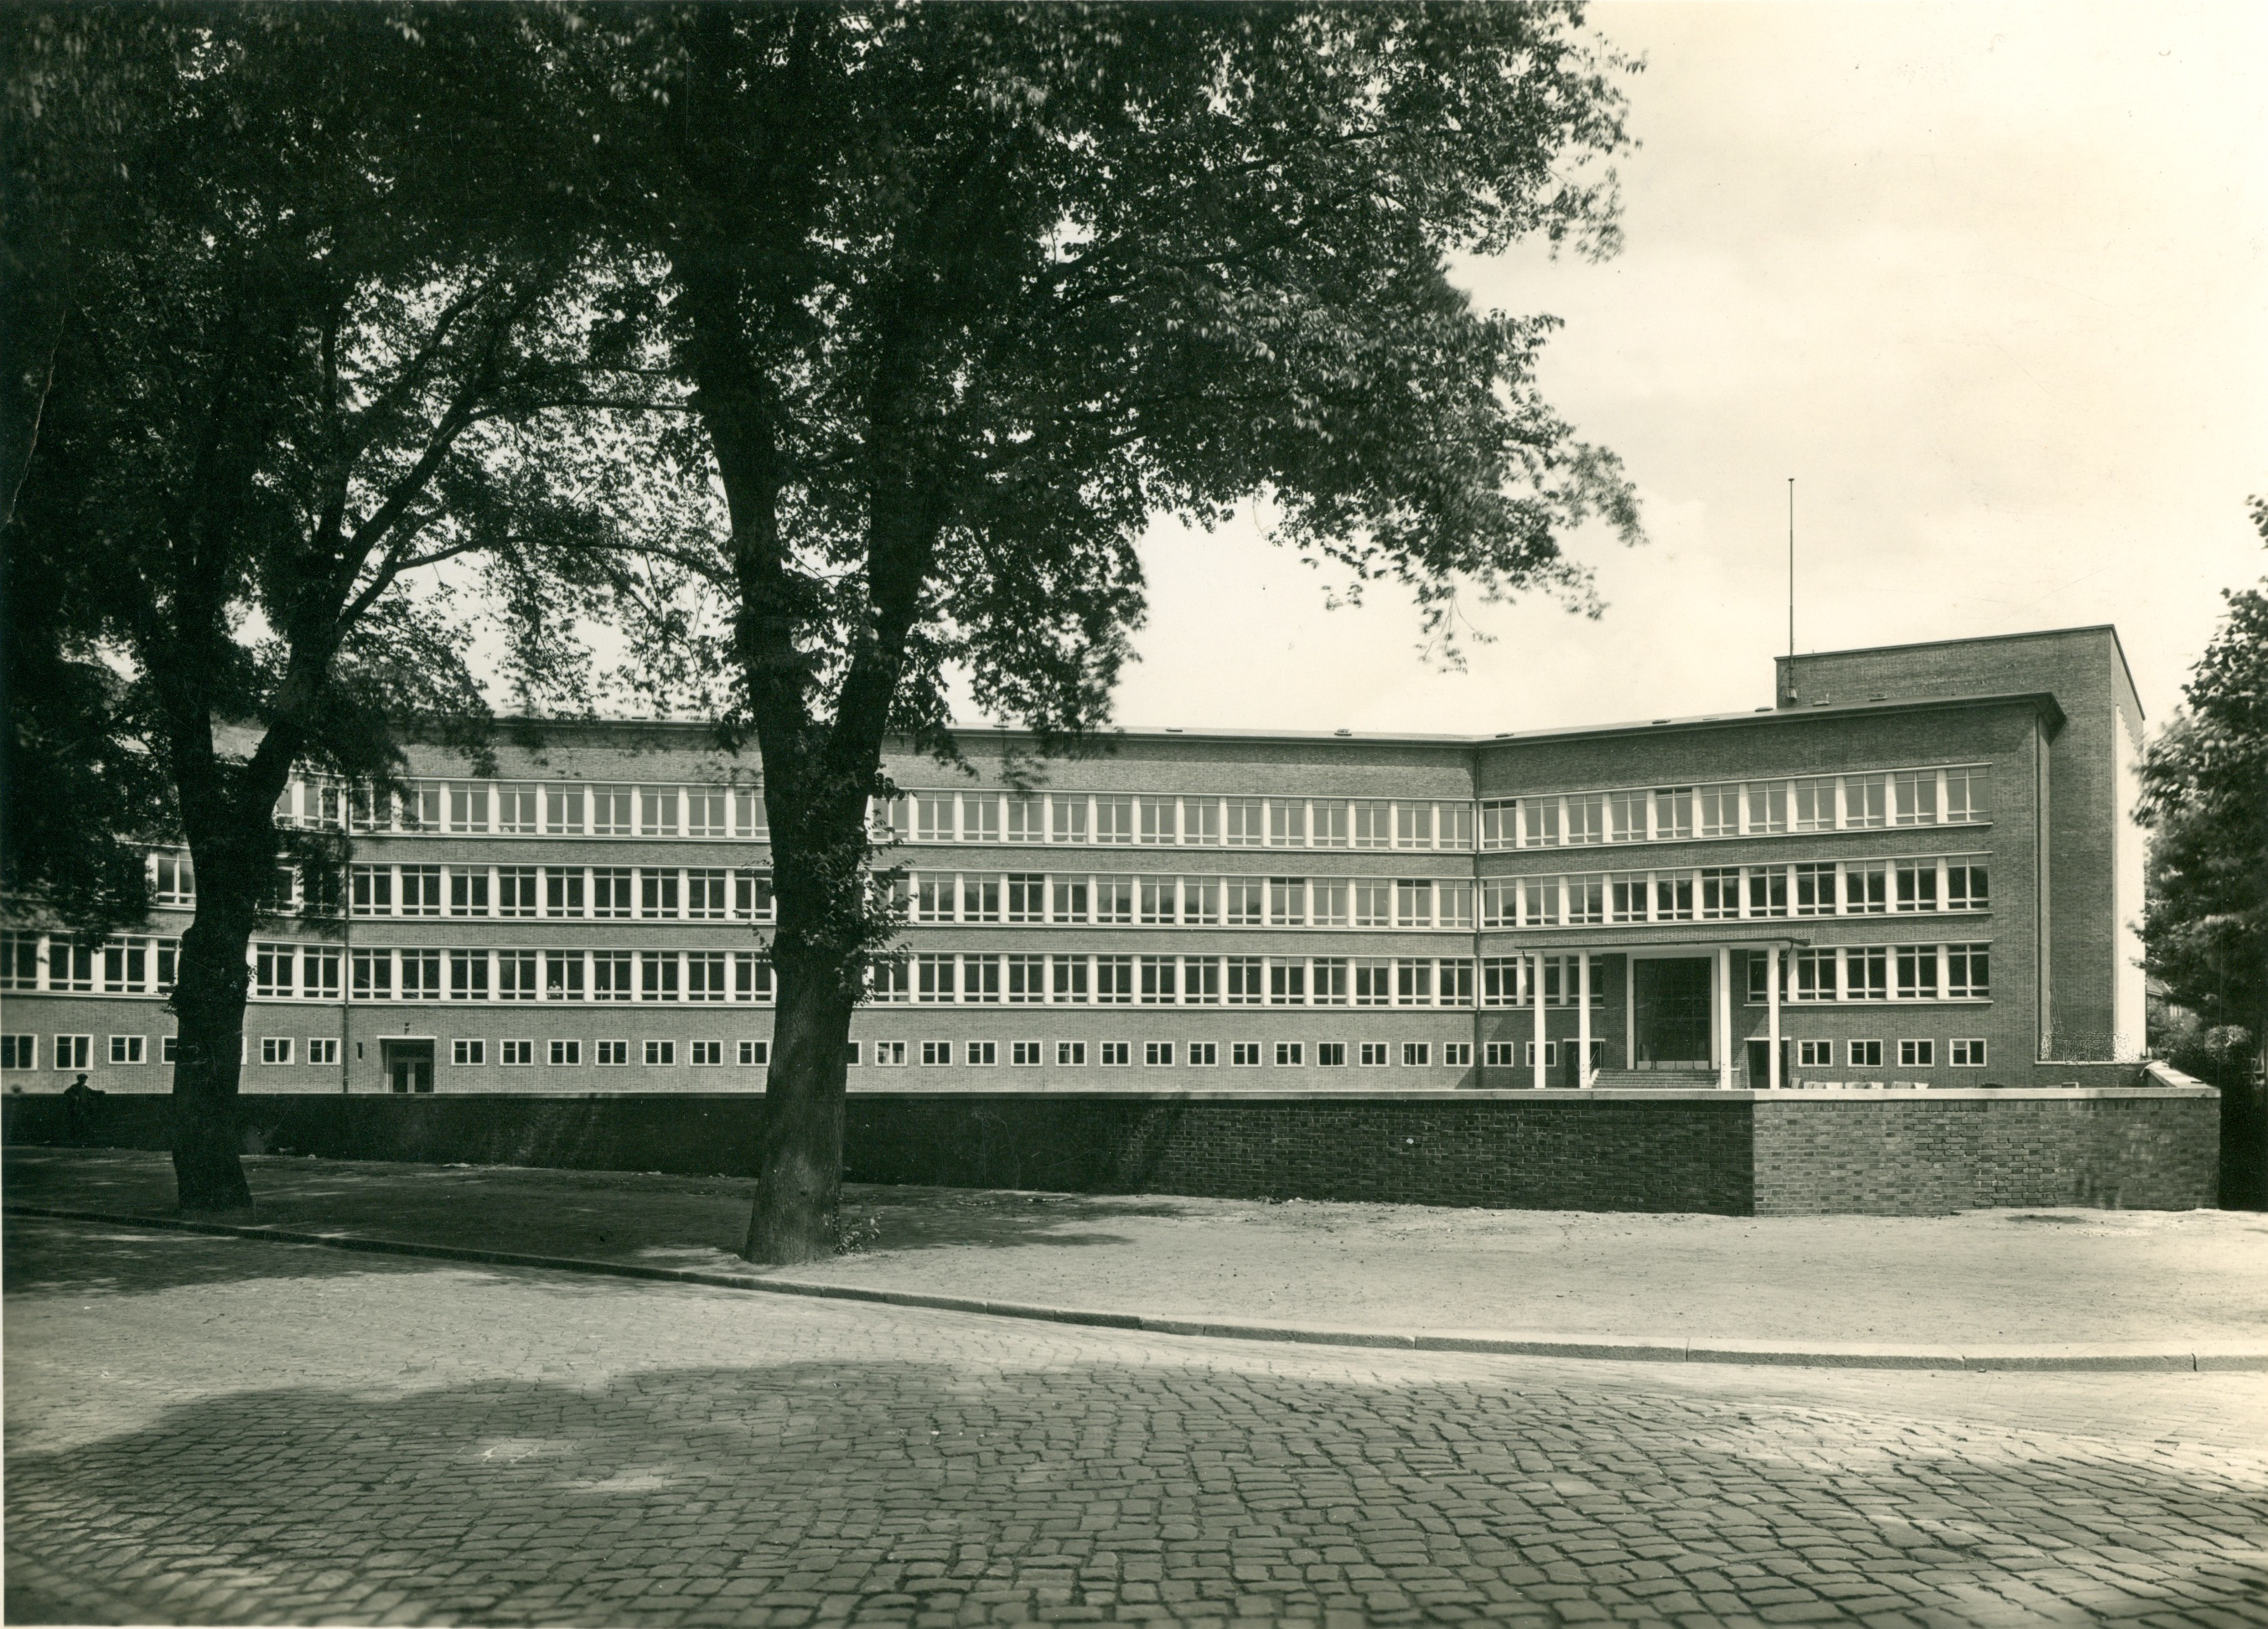 Schon in den 1930ern gab es moderne Bauformen in Hamburg. Auf zur Ausstellung.